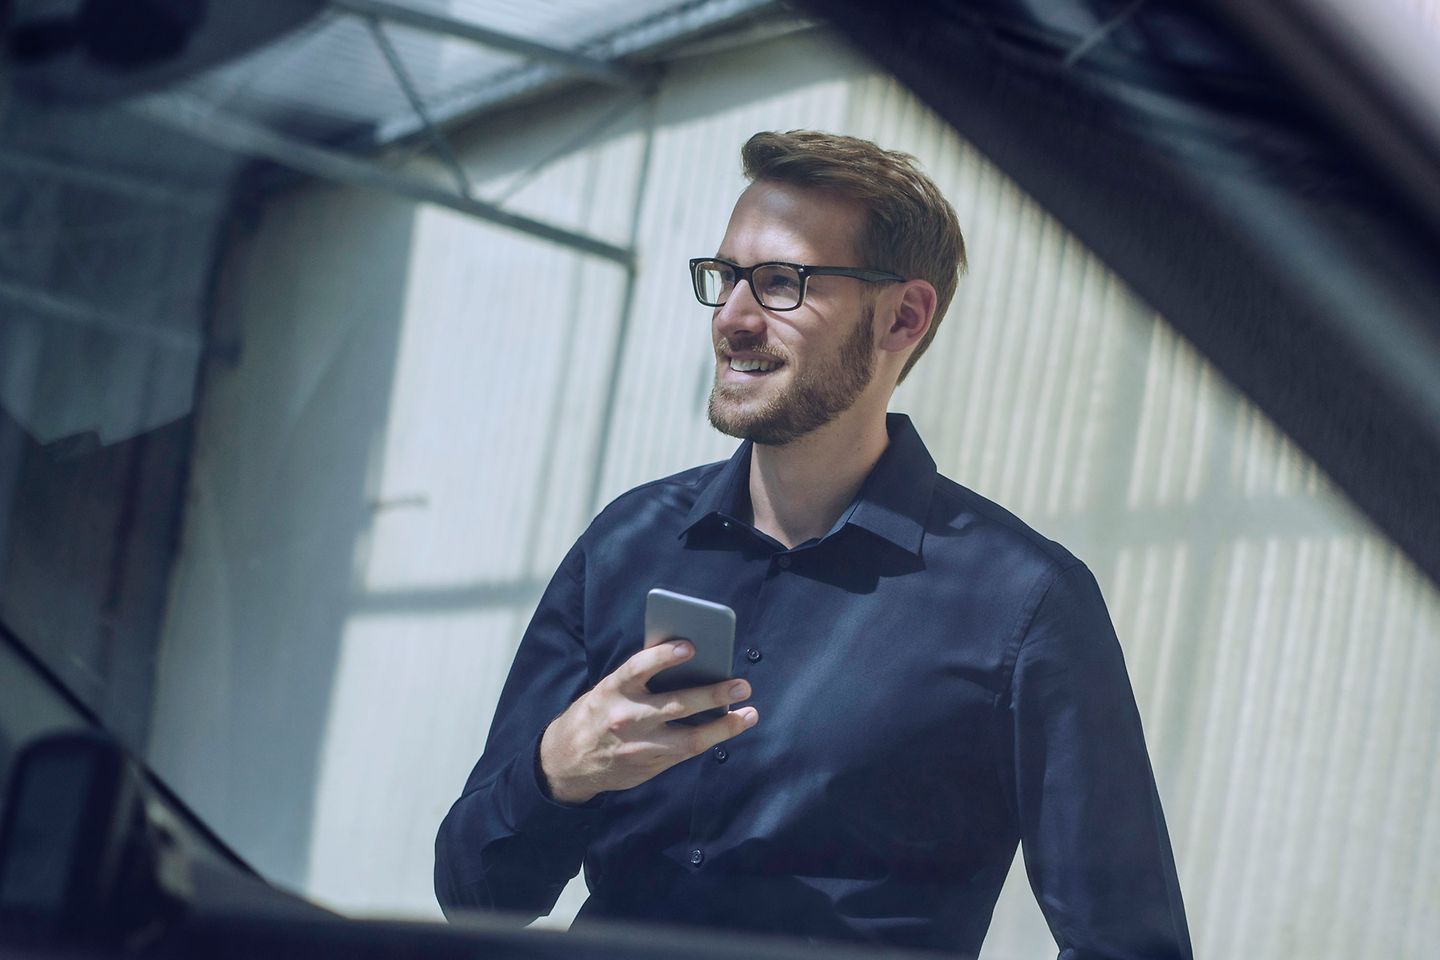 Vista desde un coche a un hombre sonriente con gafas y un celular en la mano